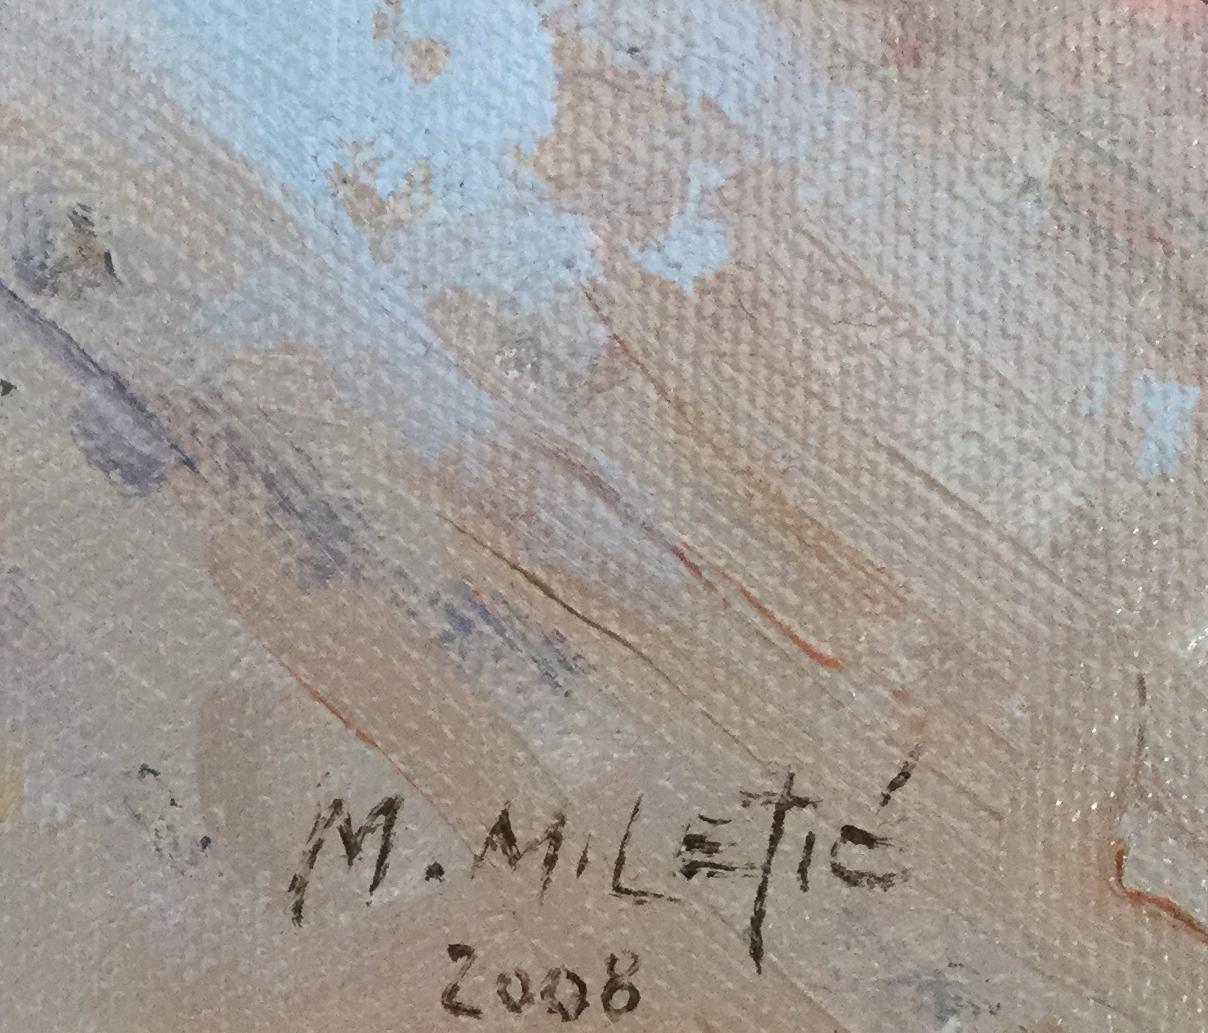 Milan Miletic, serbischer Künstler, geboren 1950.

Pont Neuf, Paris Öl auf Leinwand, signiert unten rechts und datiert 2008. In dekorativem Goldrahmen.

Der in Jugoslawien geborene Künstler Milan Miletic machte seinen Master-Abschluss in Kunst